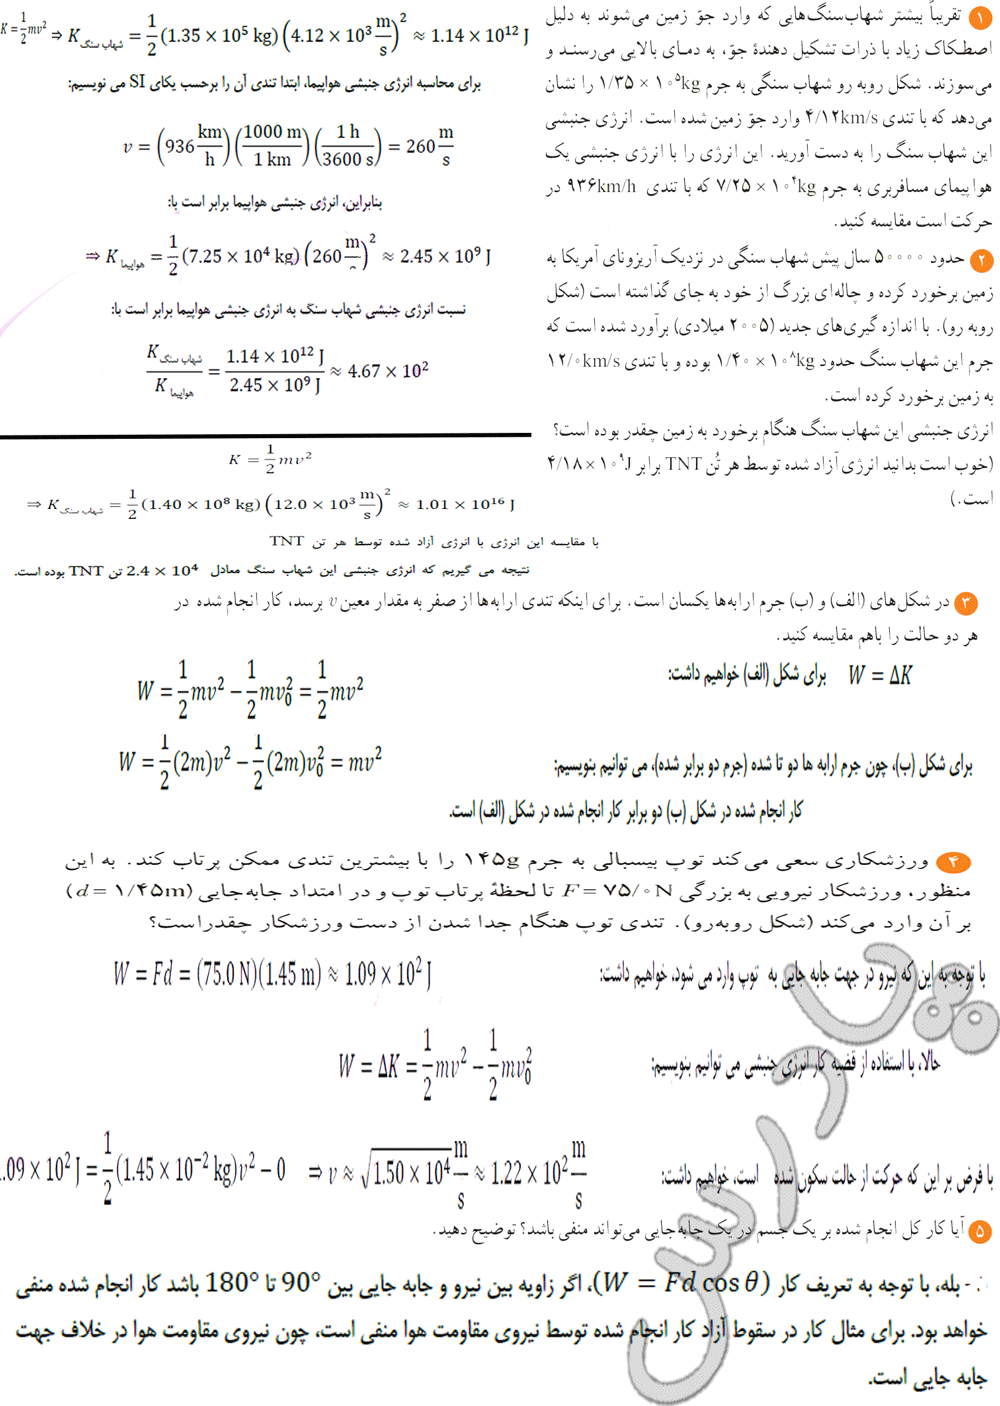 جواب پرسش های آخر فصل دوم فیزیک دهم تجربی 